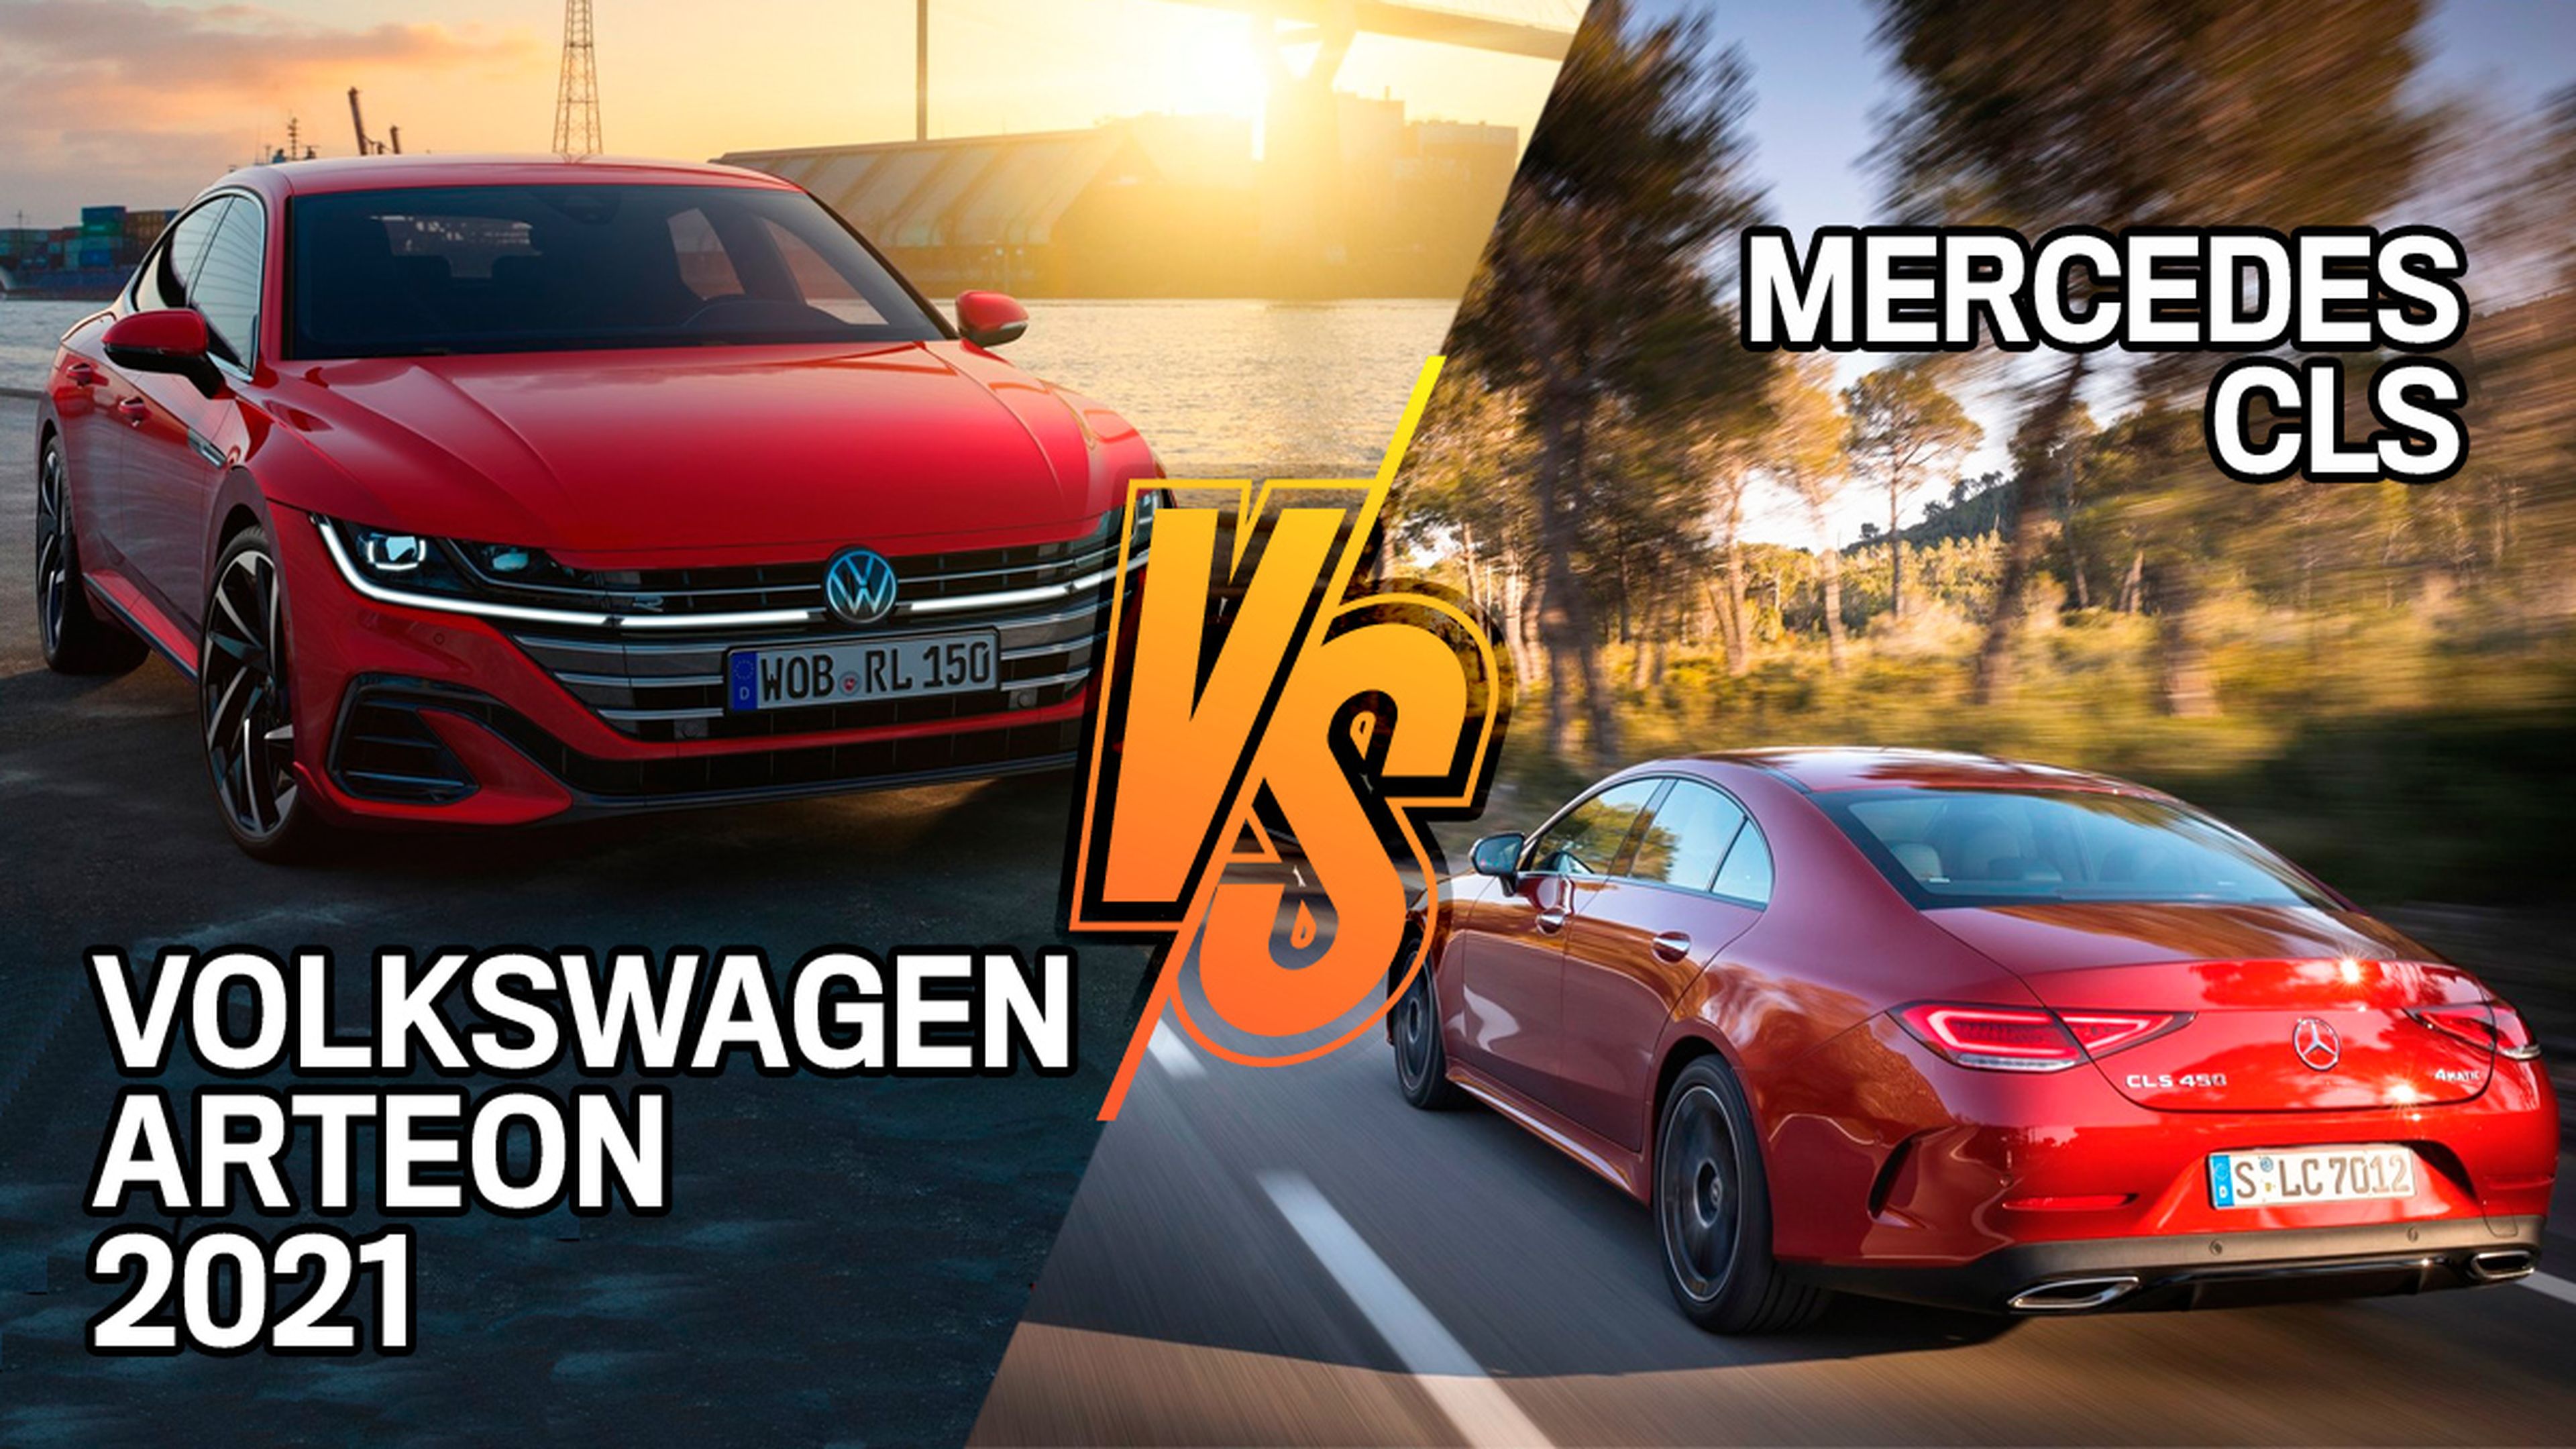 Mercedes CLS o VW Arteon, ¿cuál es mejor compra?